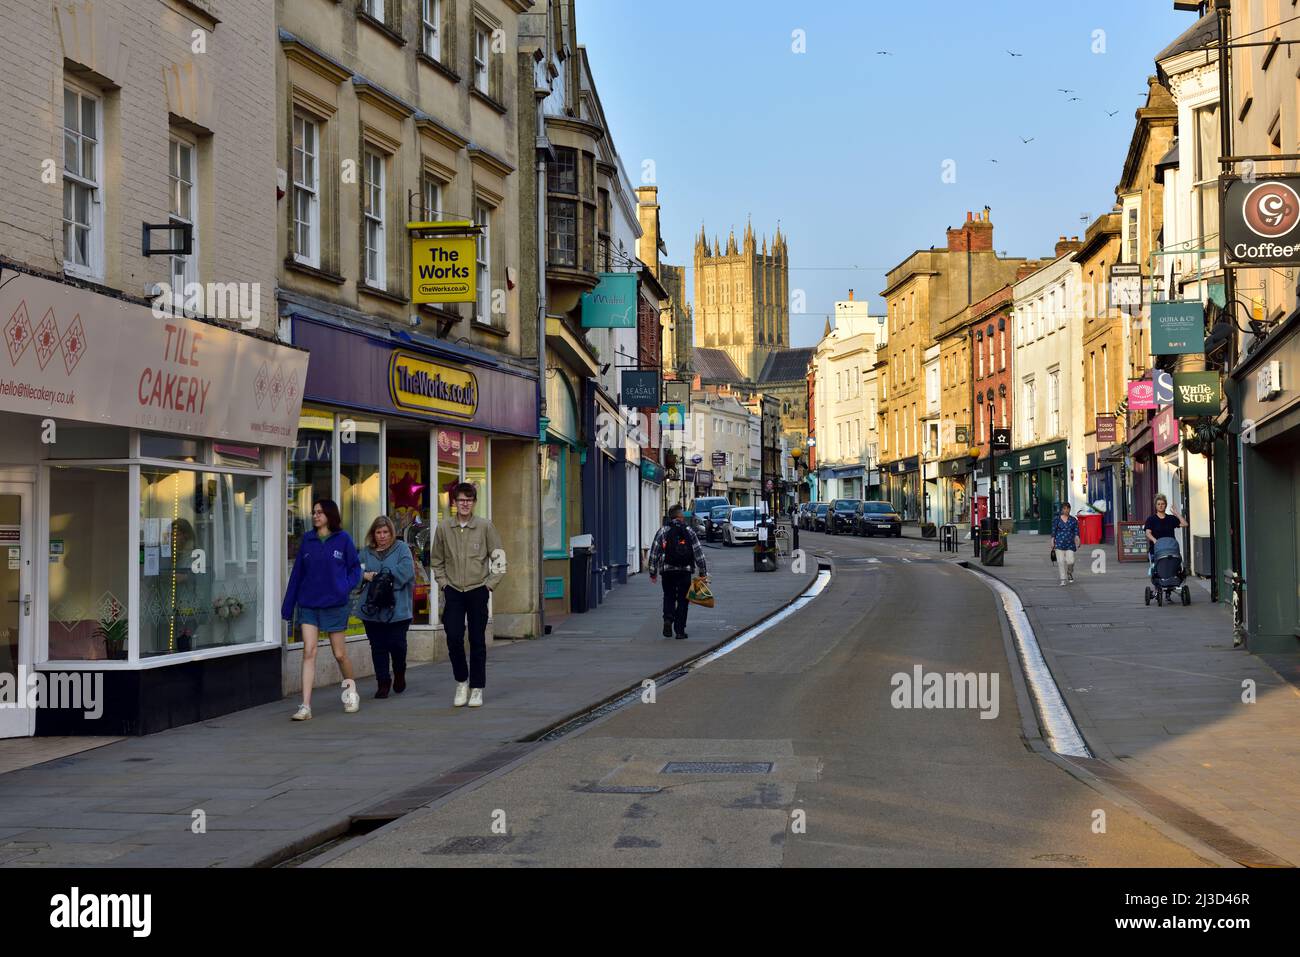 Puits, Somerset High Street buildings, magasins, Royaume-Uni avec cathédrale en arrière-plan Banque D'Images